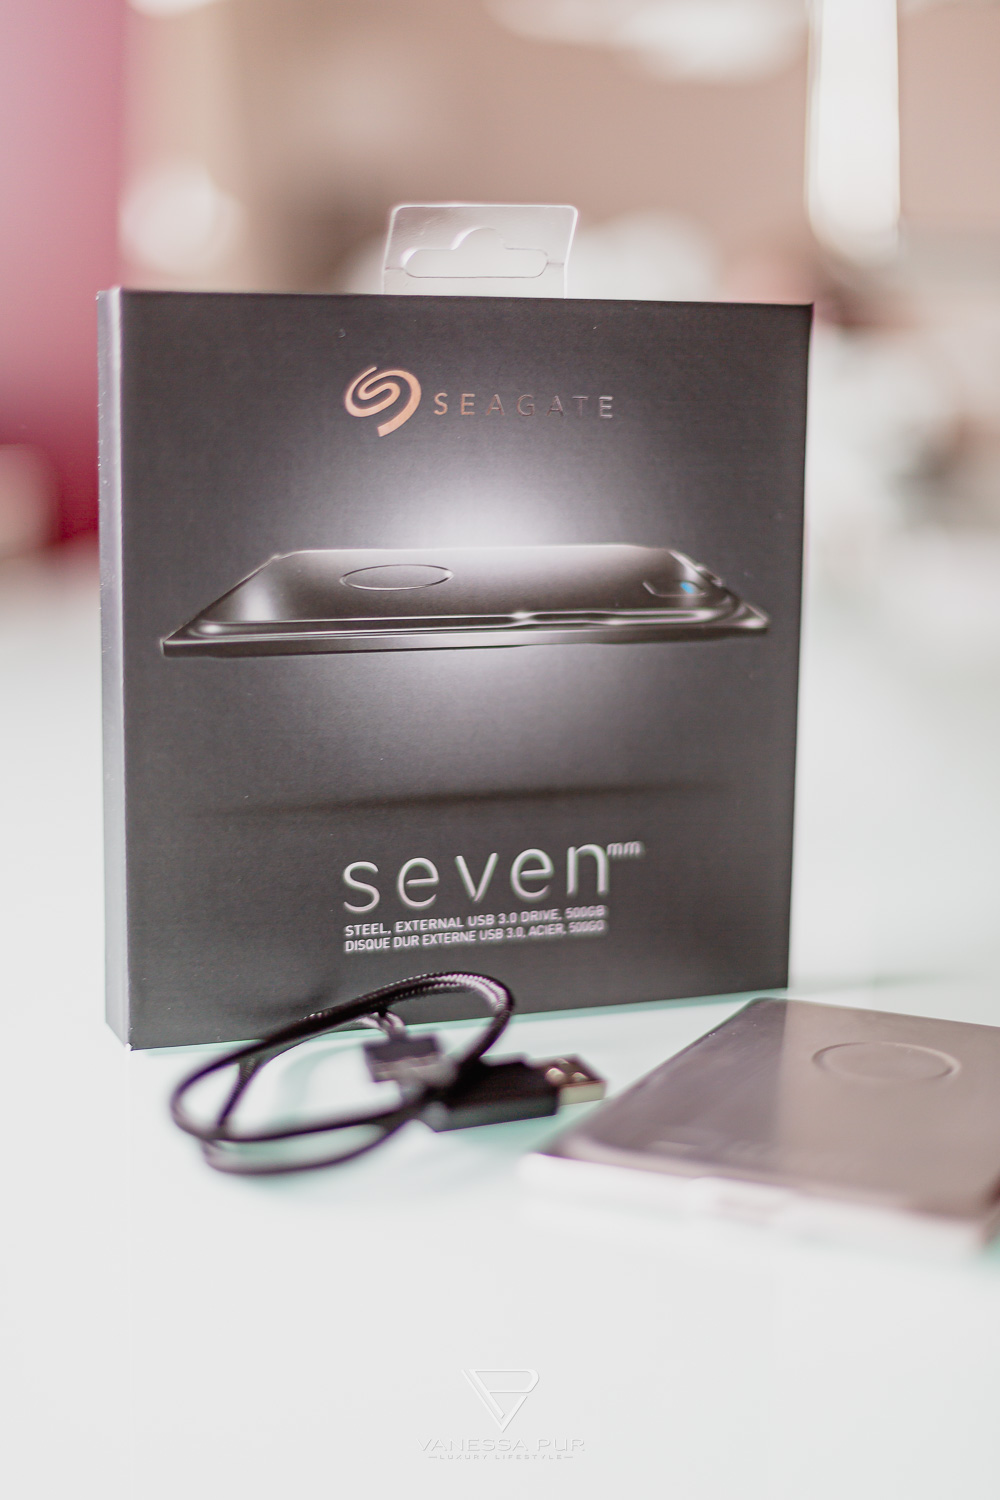 Seagate Seven Festplatte - extrem stabile externe Festplatte für den mobilen Einsatz am Laptop